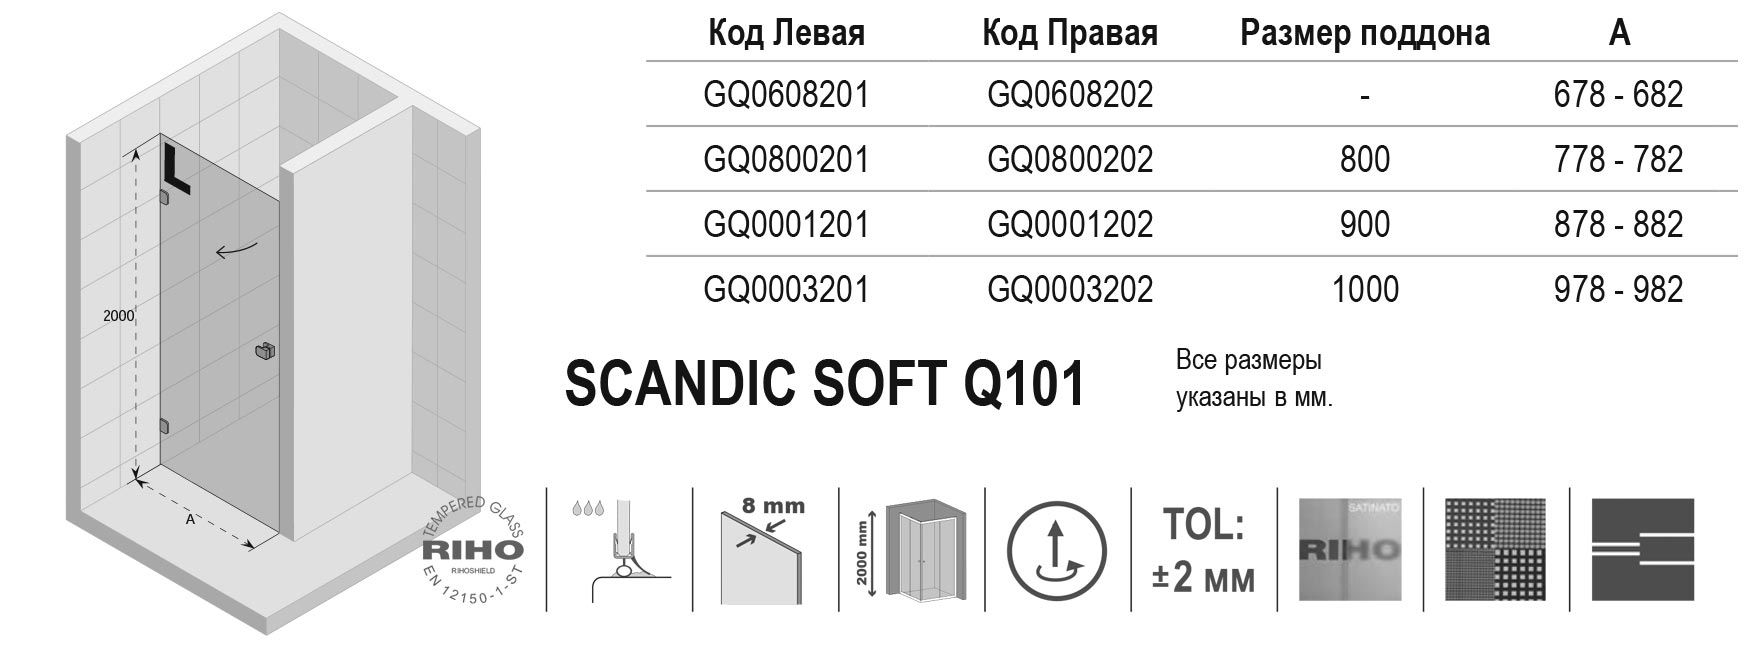 Чертёж Riho Scandic Soft Q101 GQ0608201